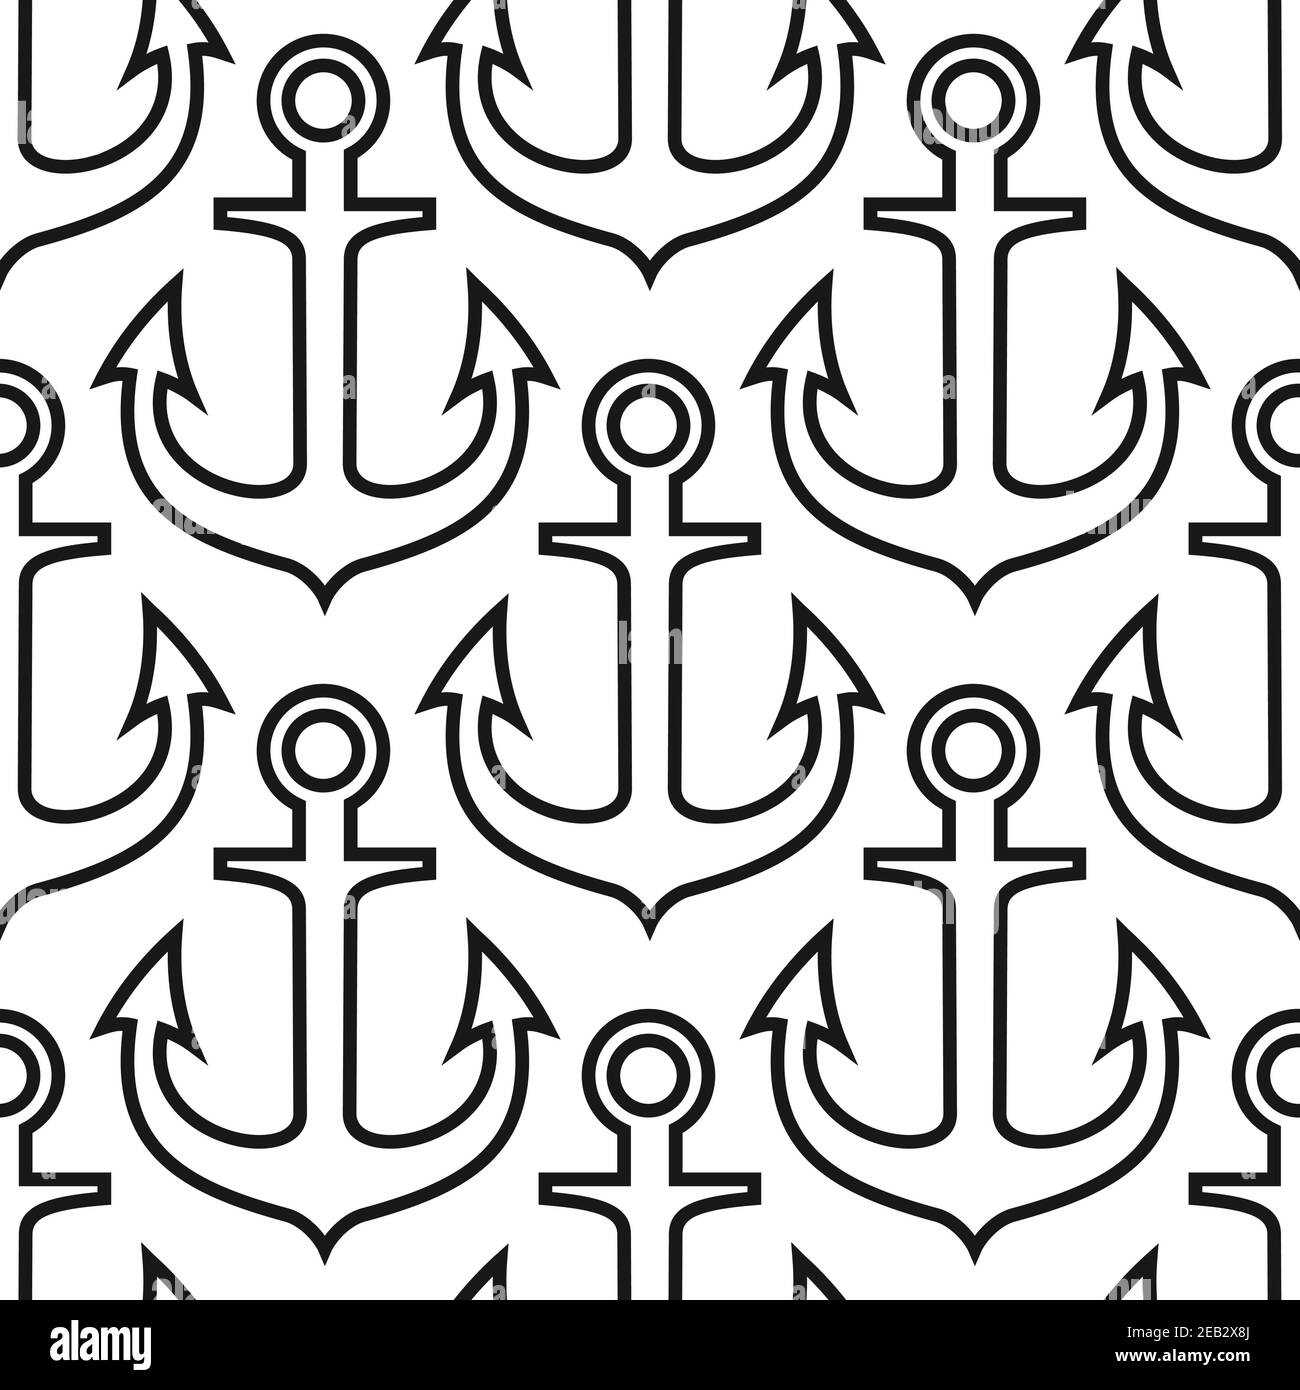 Retro schwarz marine Anker nahtlose Muster auf weißem Hintergrund in Outline-Stil, für nautische Abenteuer oder Reise Thema Design Stock Vektor